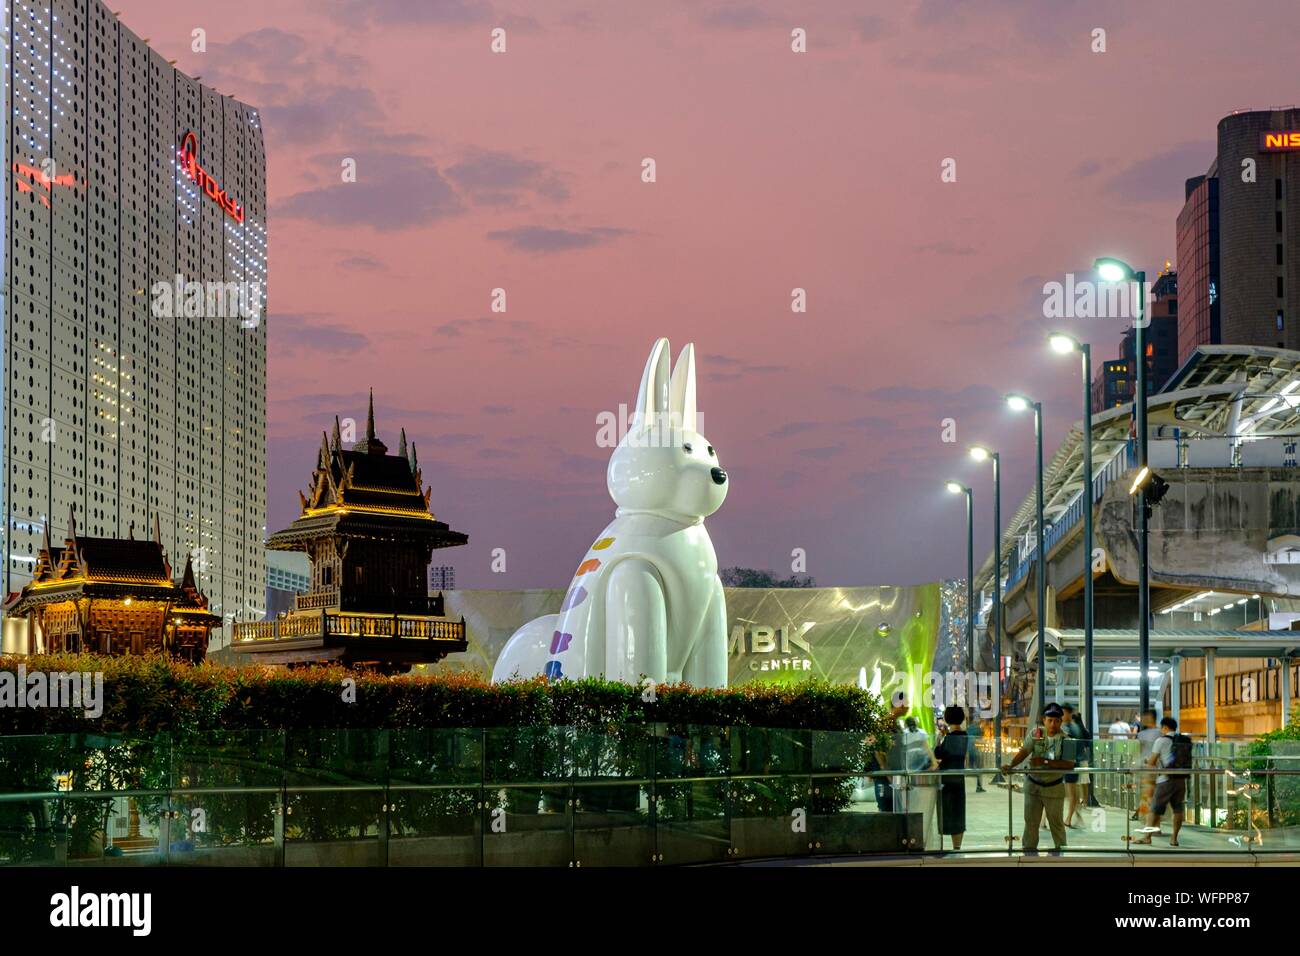 Thaïlande, Bangkok, Siam Square, le centre commercial MBK, Maja et Makrub, Khun Lolay matserpieces artiste Banque D'Images